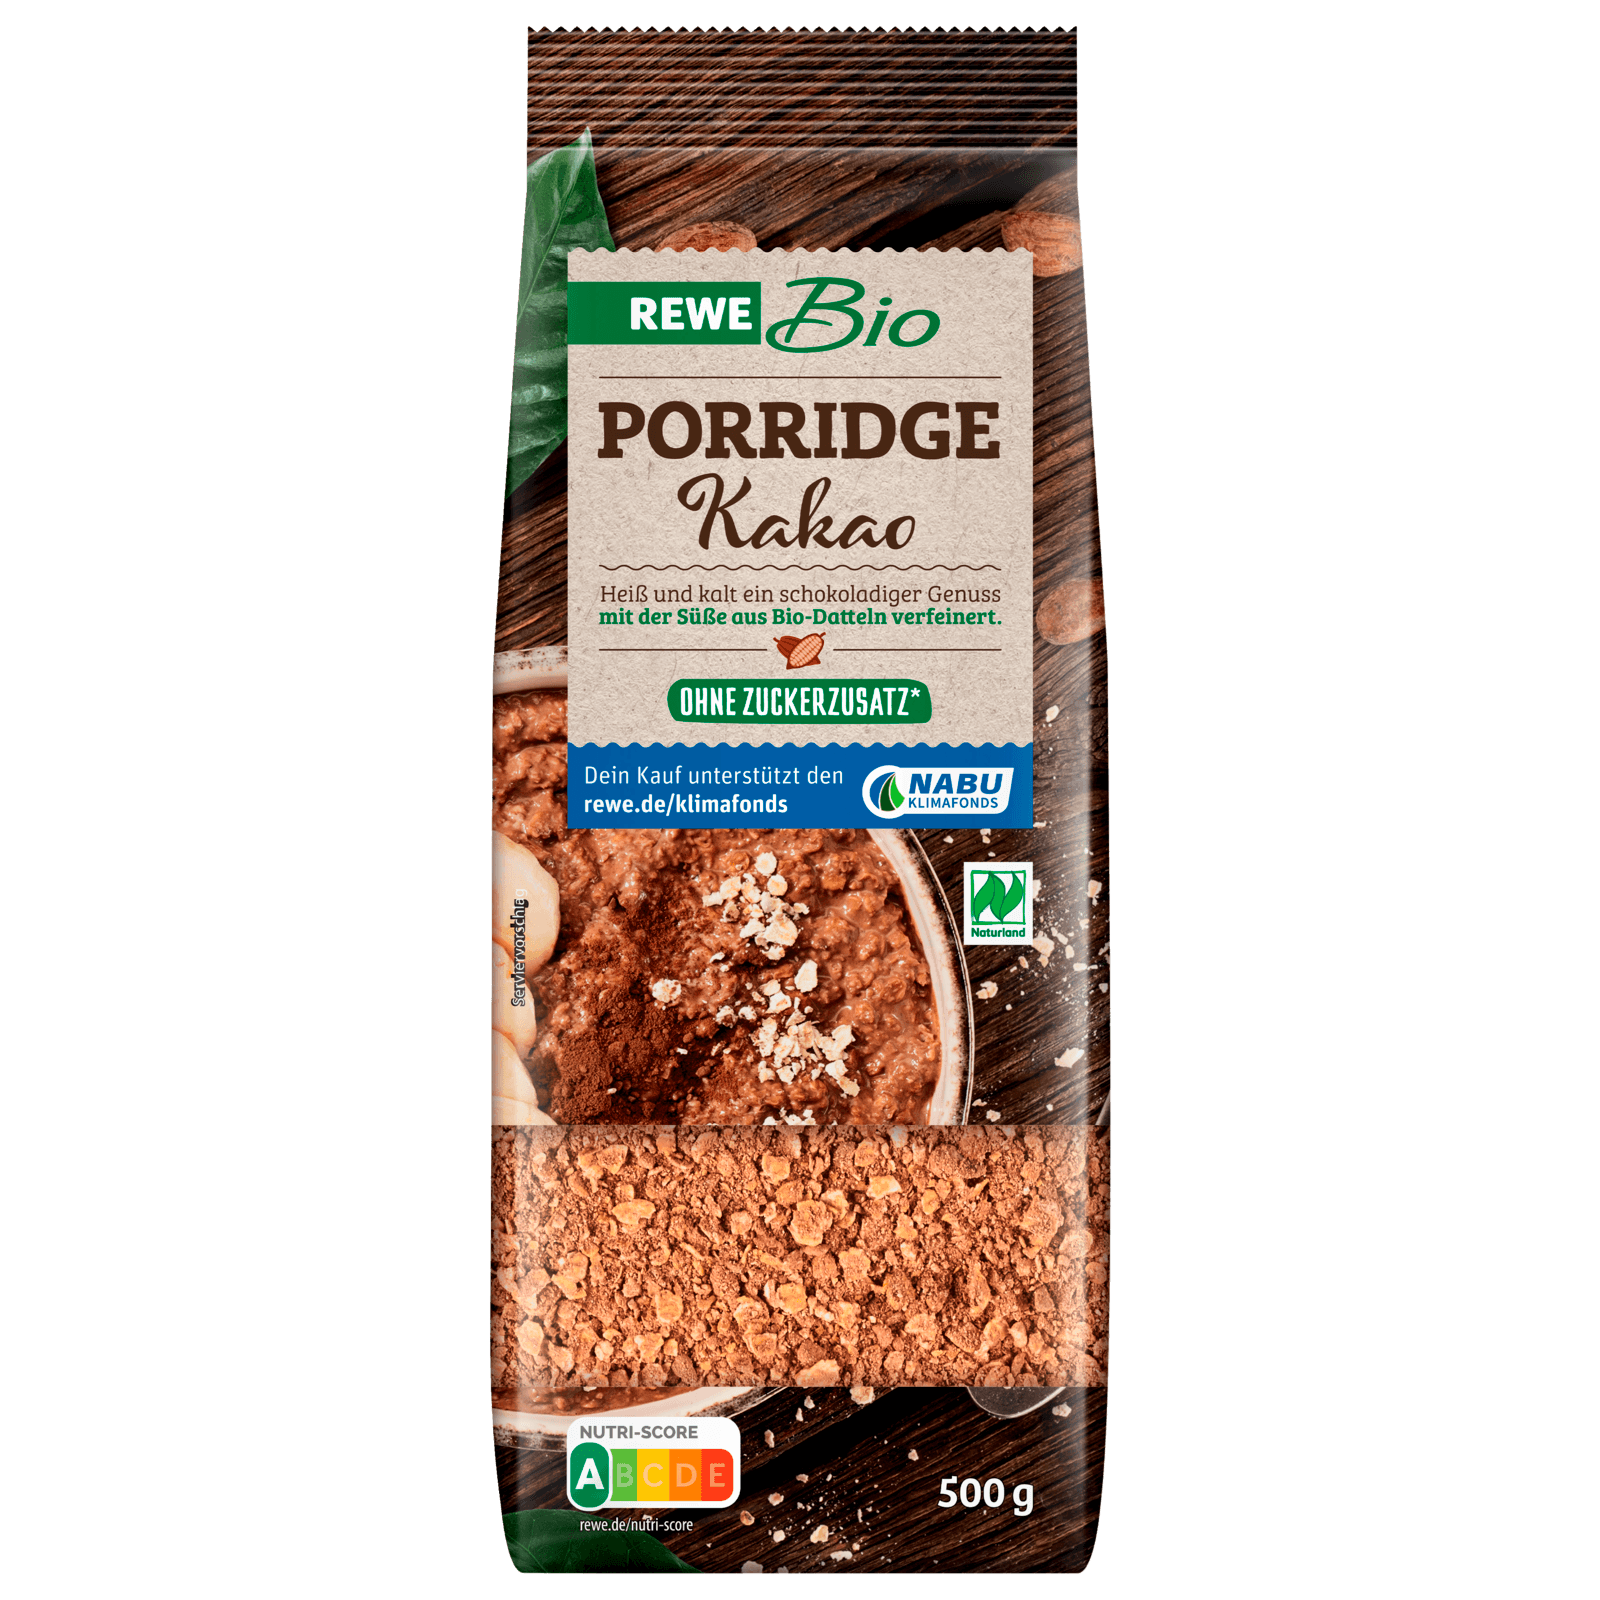 REWE Bio Porridge Kakao 500g